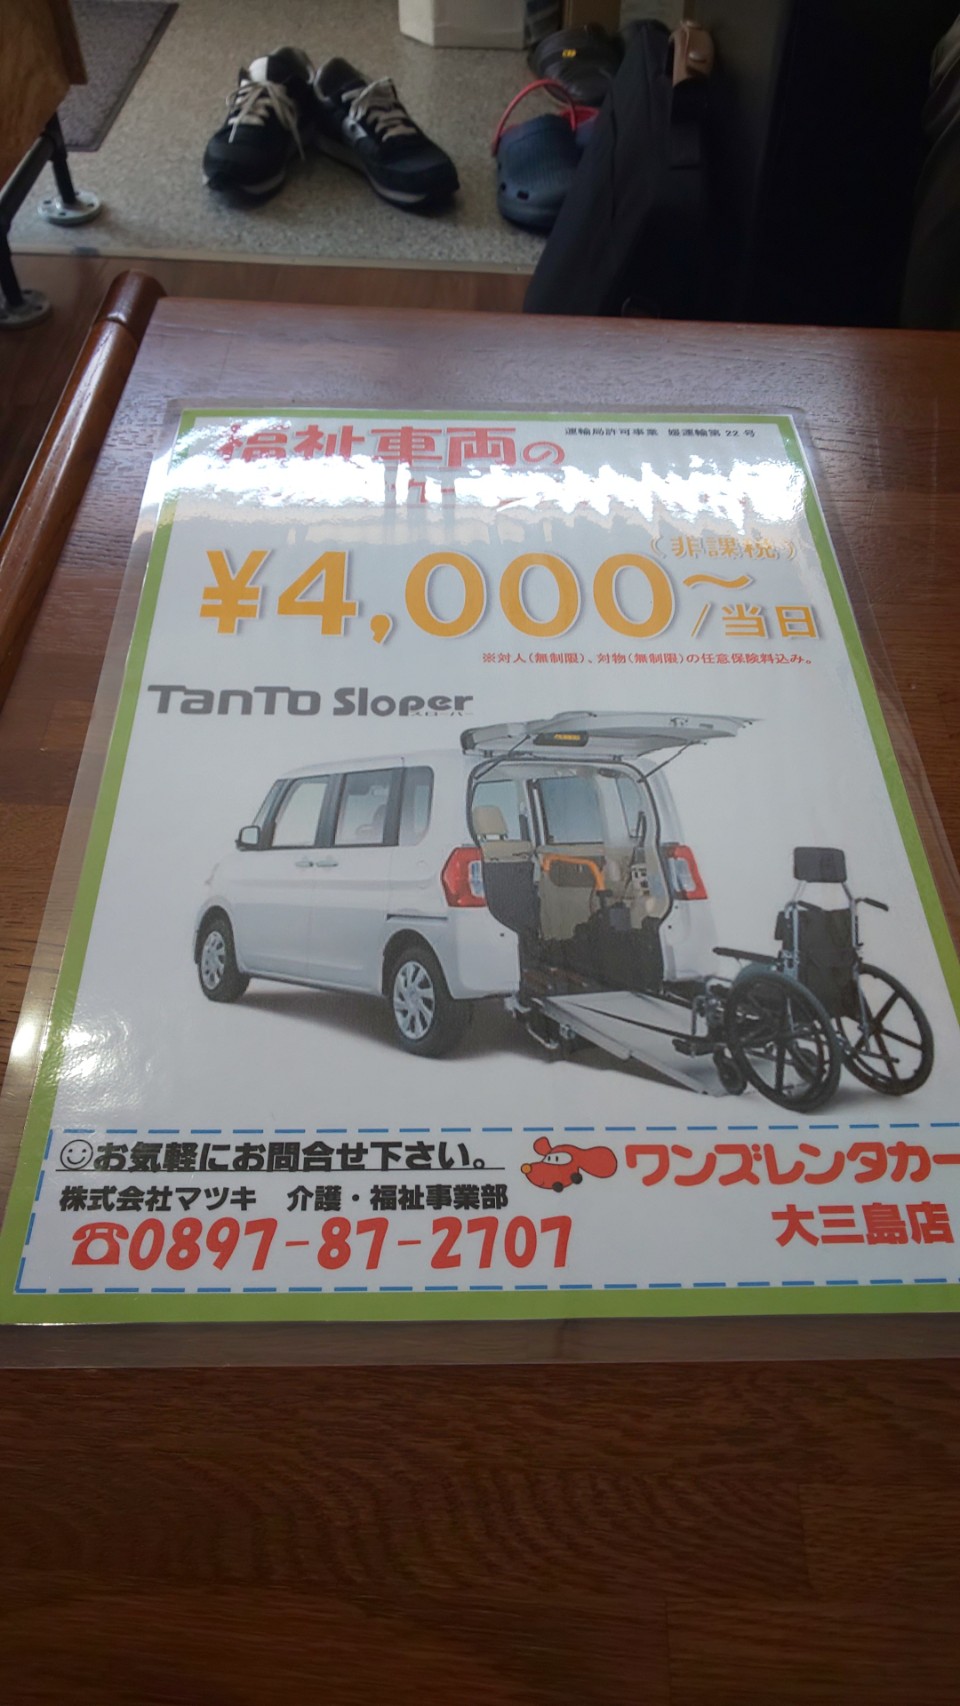 大三島で介護タクシー開業された株式会社マツキさん